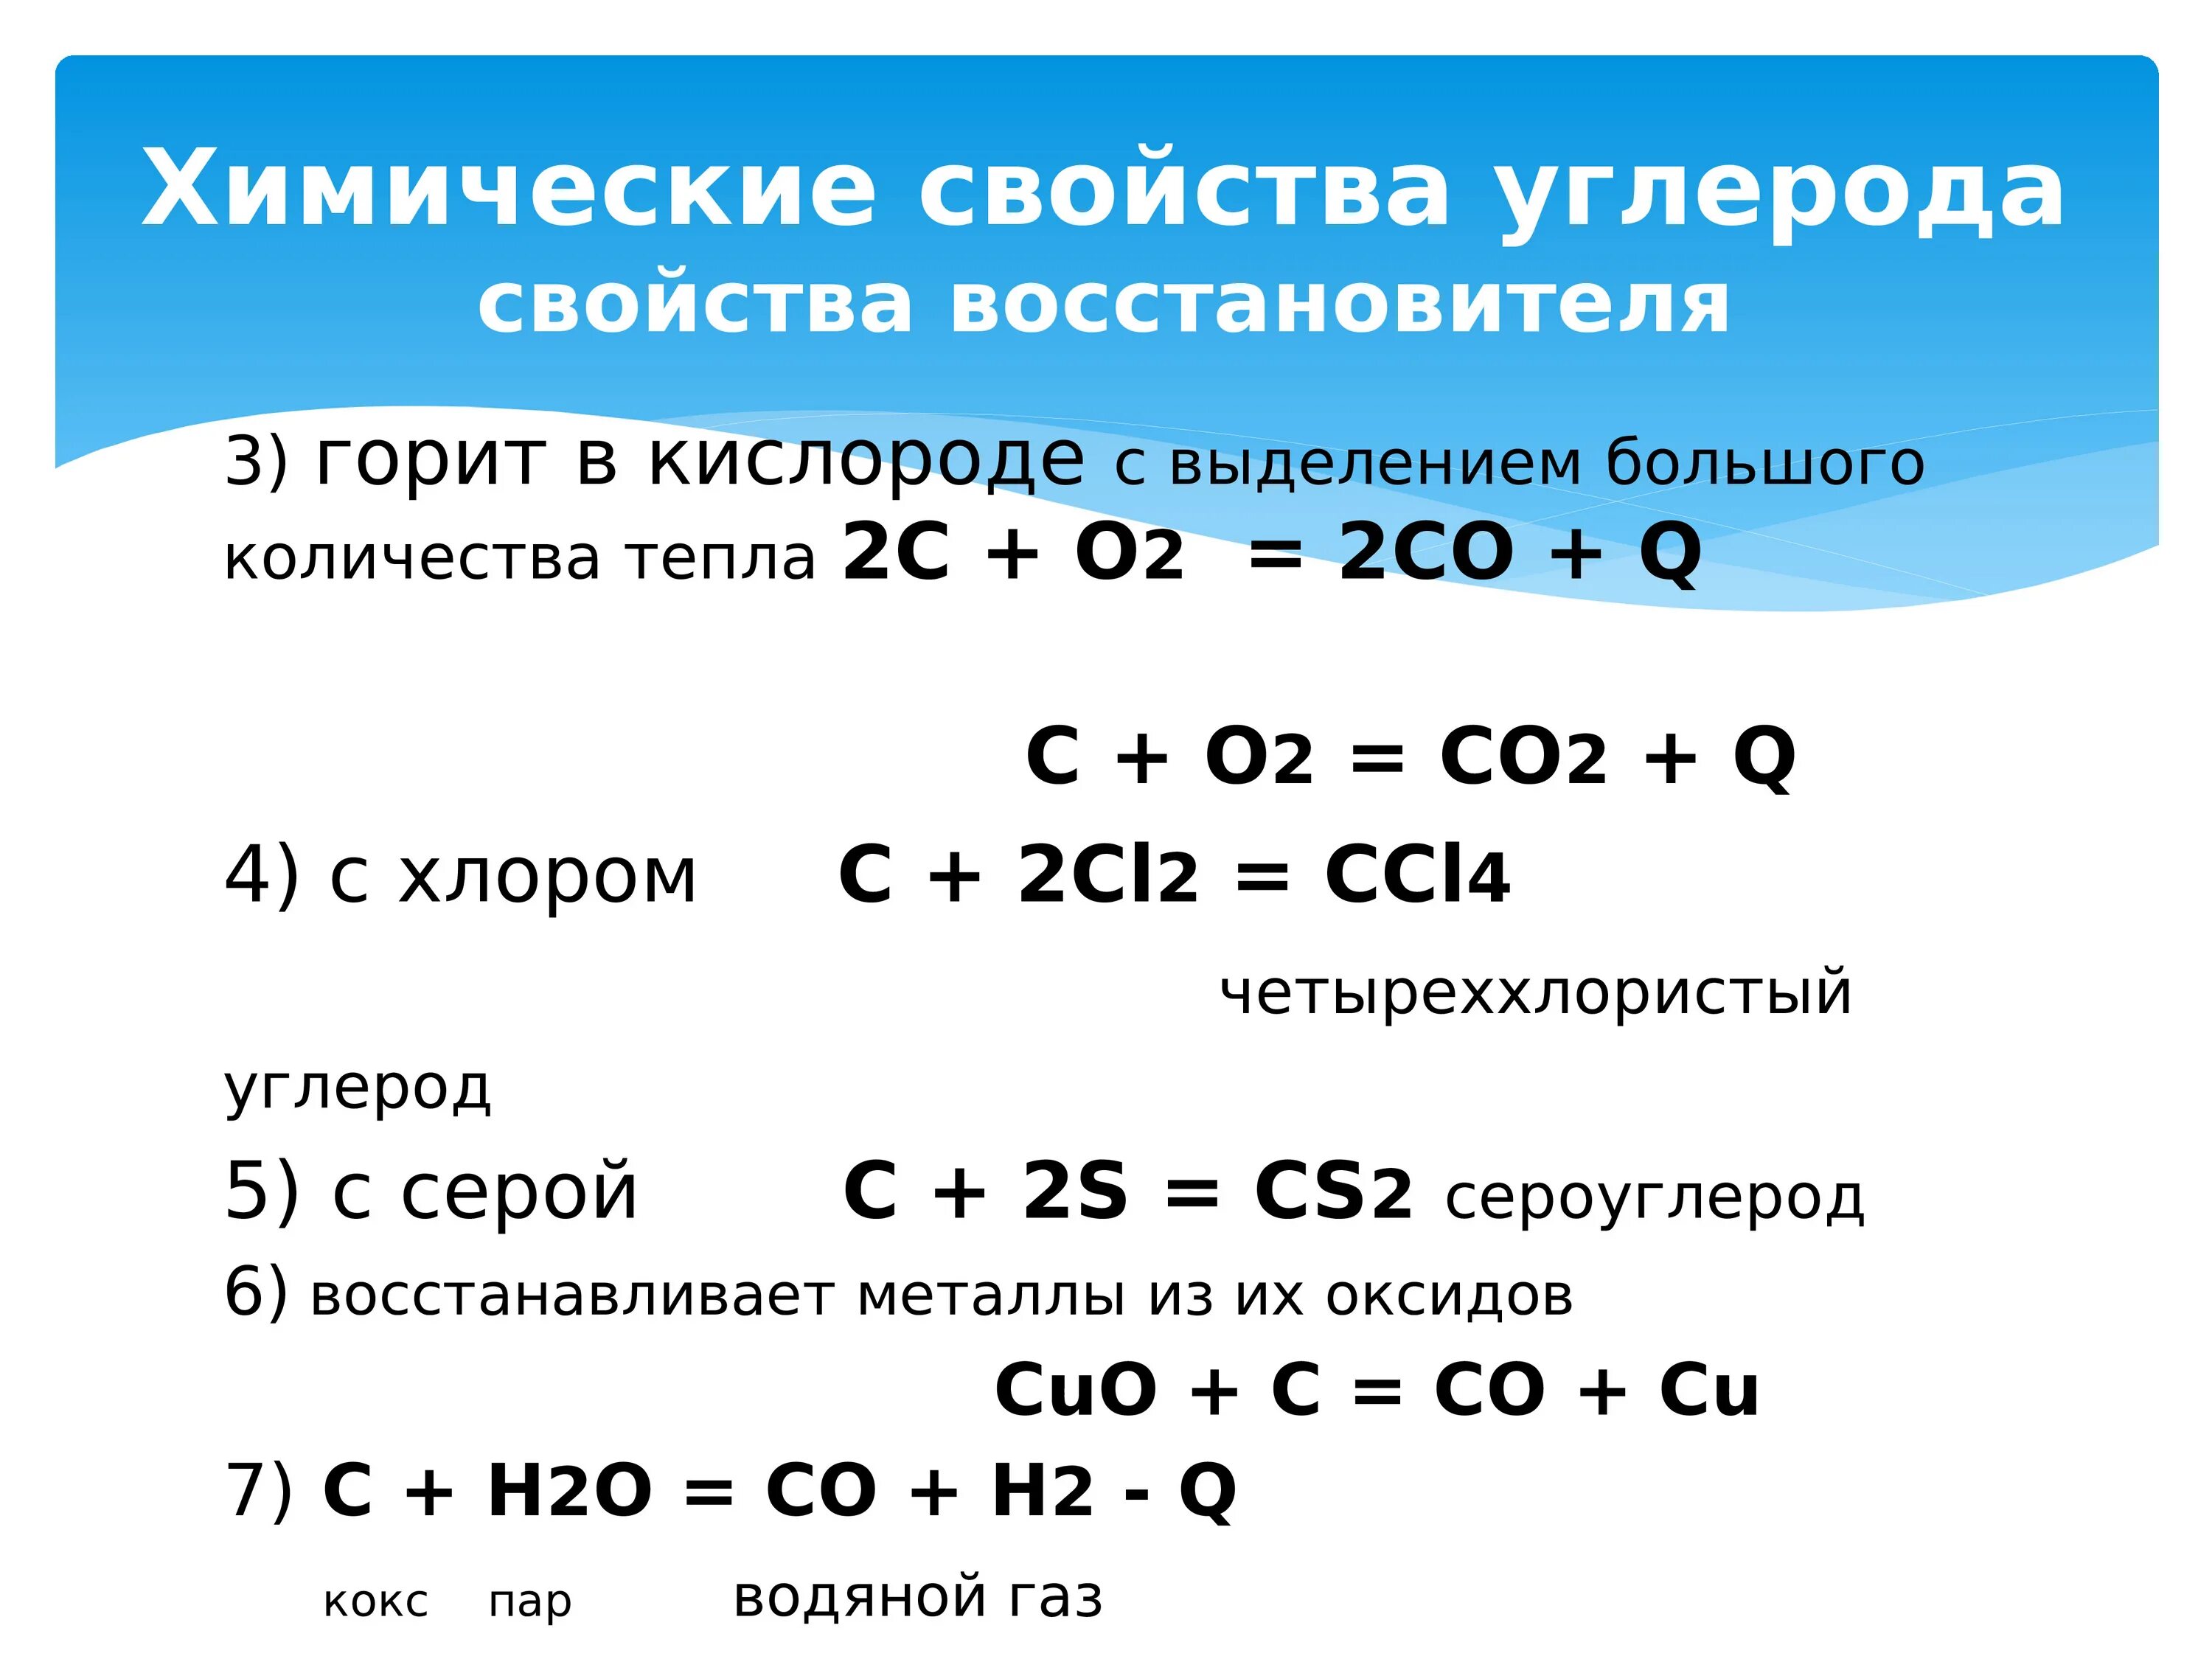 Химические реакции металлов с кислородом. Химические свойства углерода реакции. Химические свойства углерода таблица. Химические свойства углерода уравнения. Углерод соединения углерода.